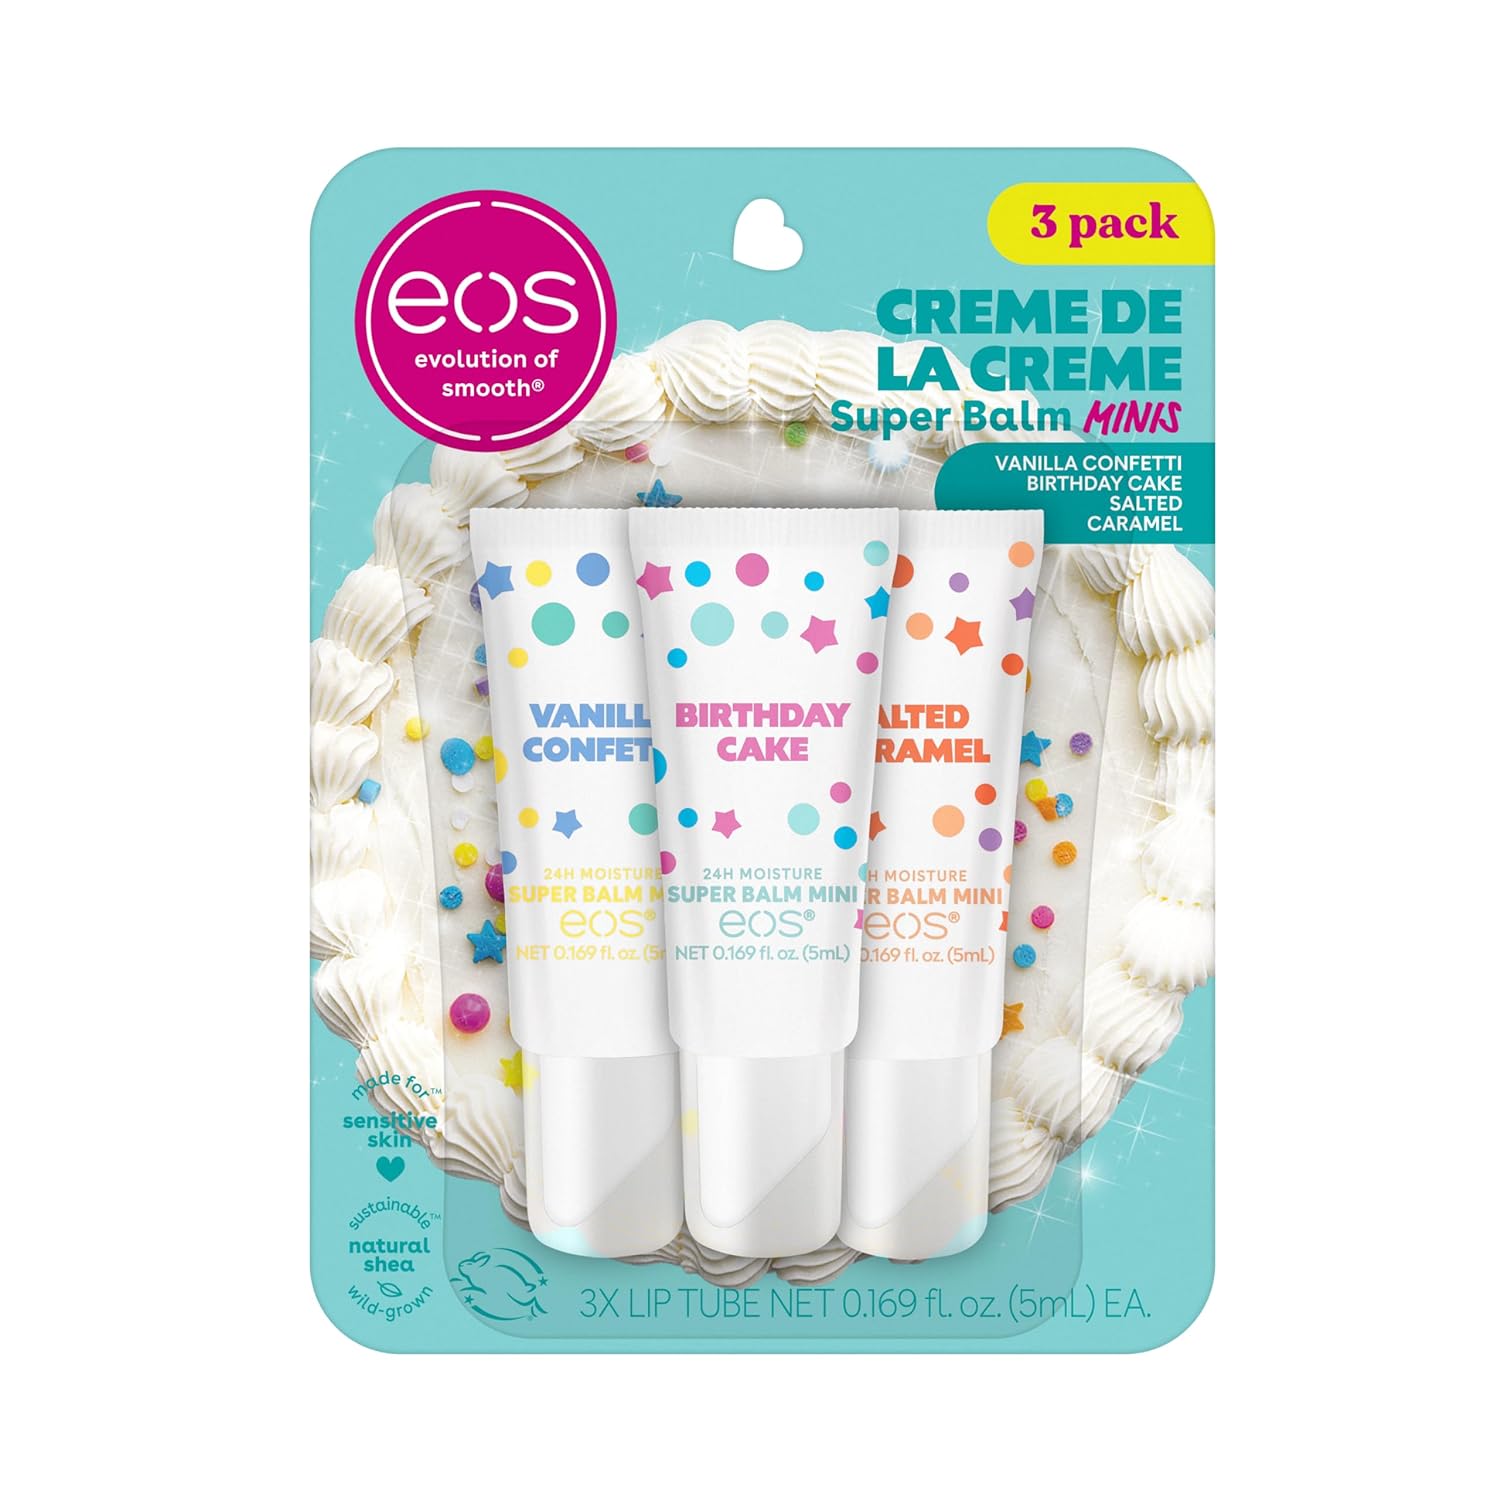 eos 24H Moisture Super Balm Minis- Crème de la Crème, Limited-Edition Lip Mask, Variety Pack, 0.169 fl oz, 3-Pack